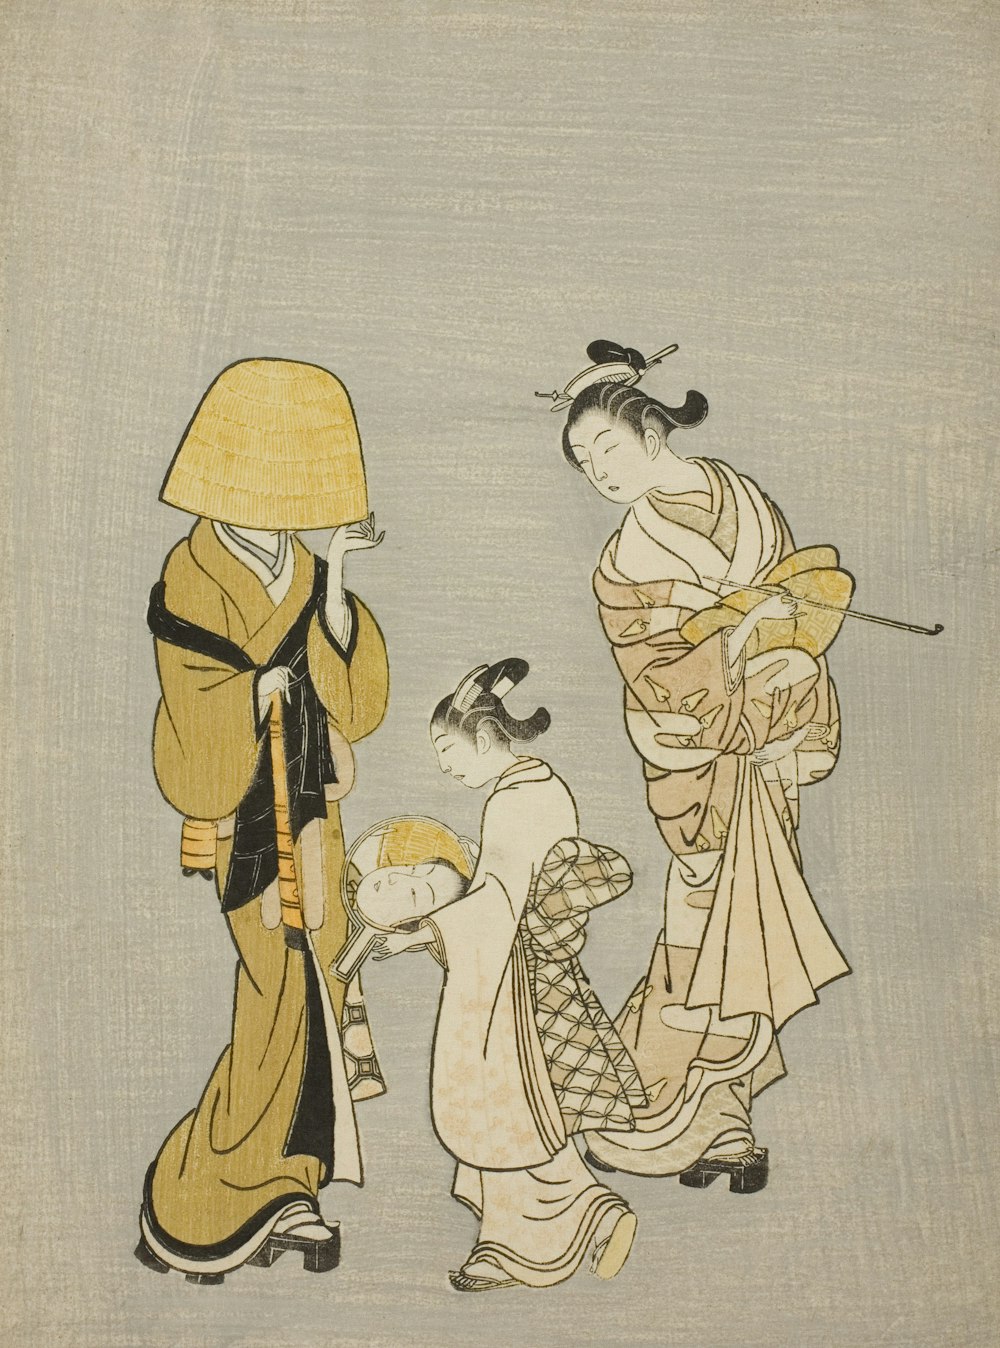 Ein Gemälde von drei Frauen in traditioneller japanischer Kleidung